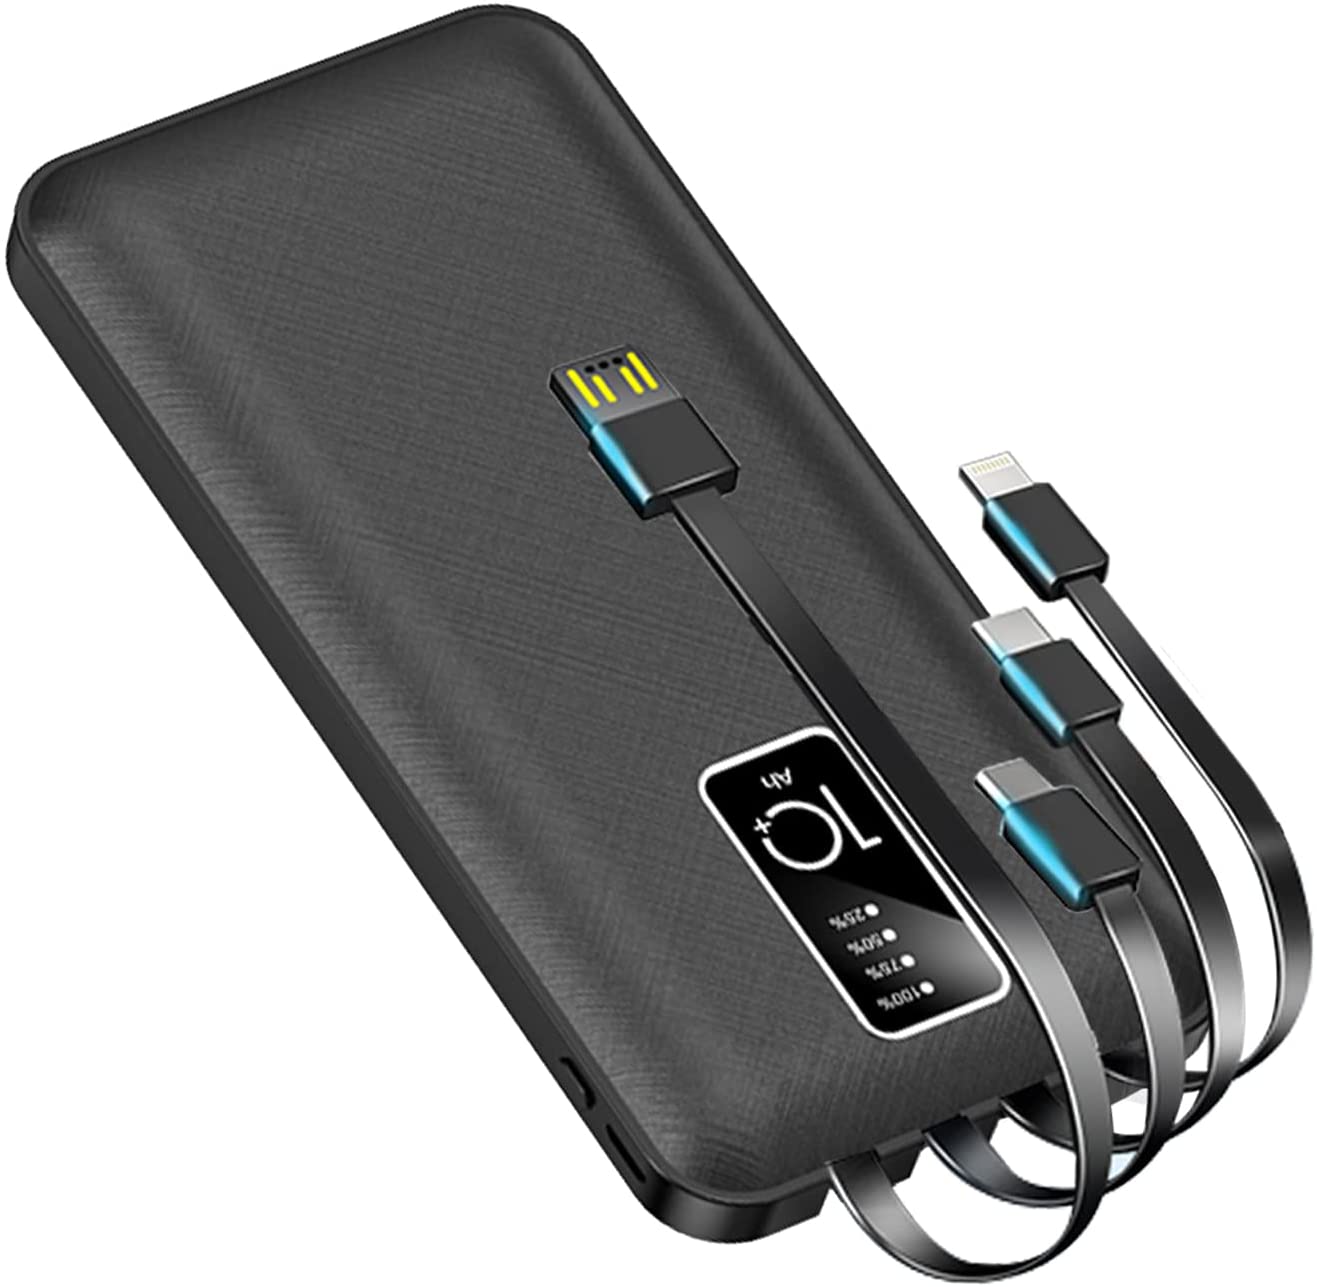 Cargador portátil Power Bank 13800 mAh Carga rápida Batería Externa Incorporada 4 Cables Paquete de Batería con Indicador LCD